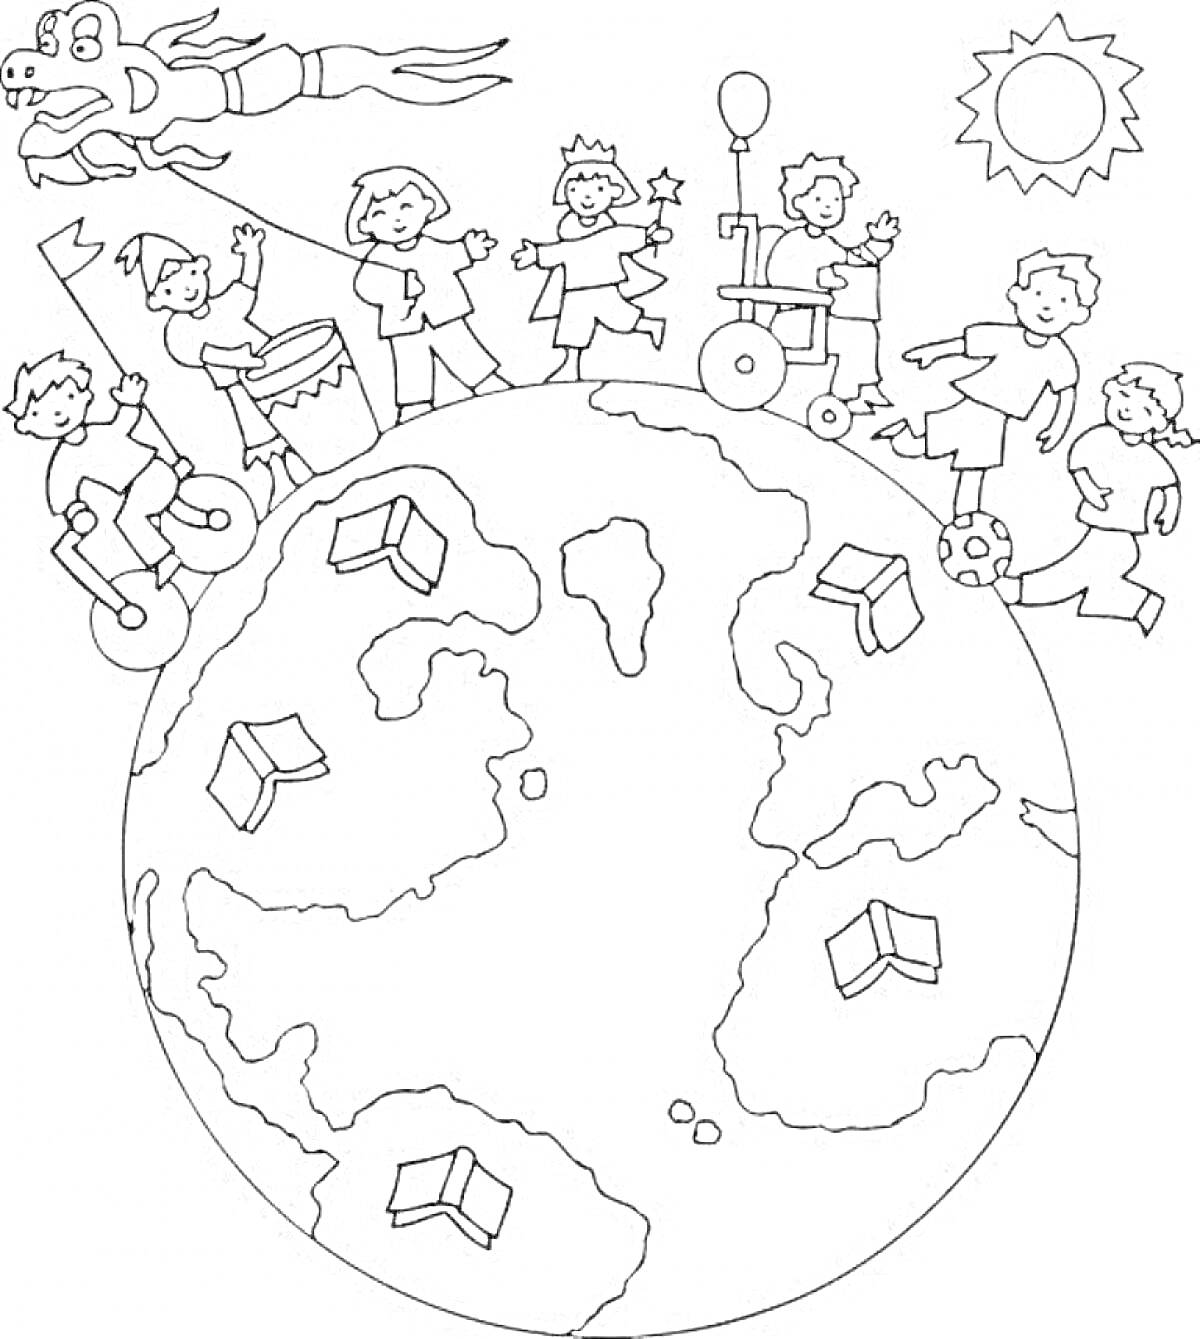 Раскраска Дети на планете Земля с воздушным шариком, книгами, демонструющим трюки мальчиком, раздевающейся девочкой, мальчиком с барабаном, с солнцем и облаками.